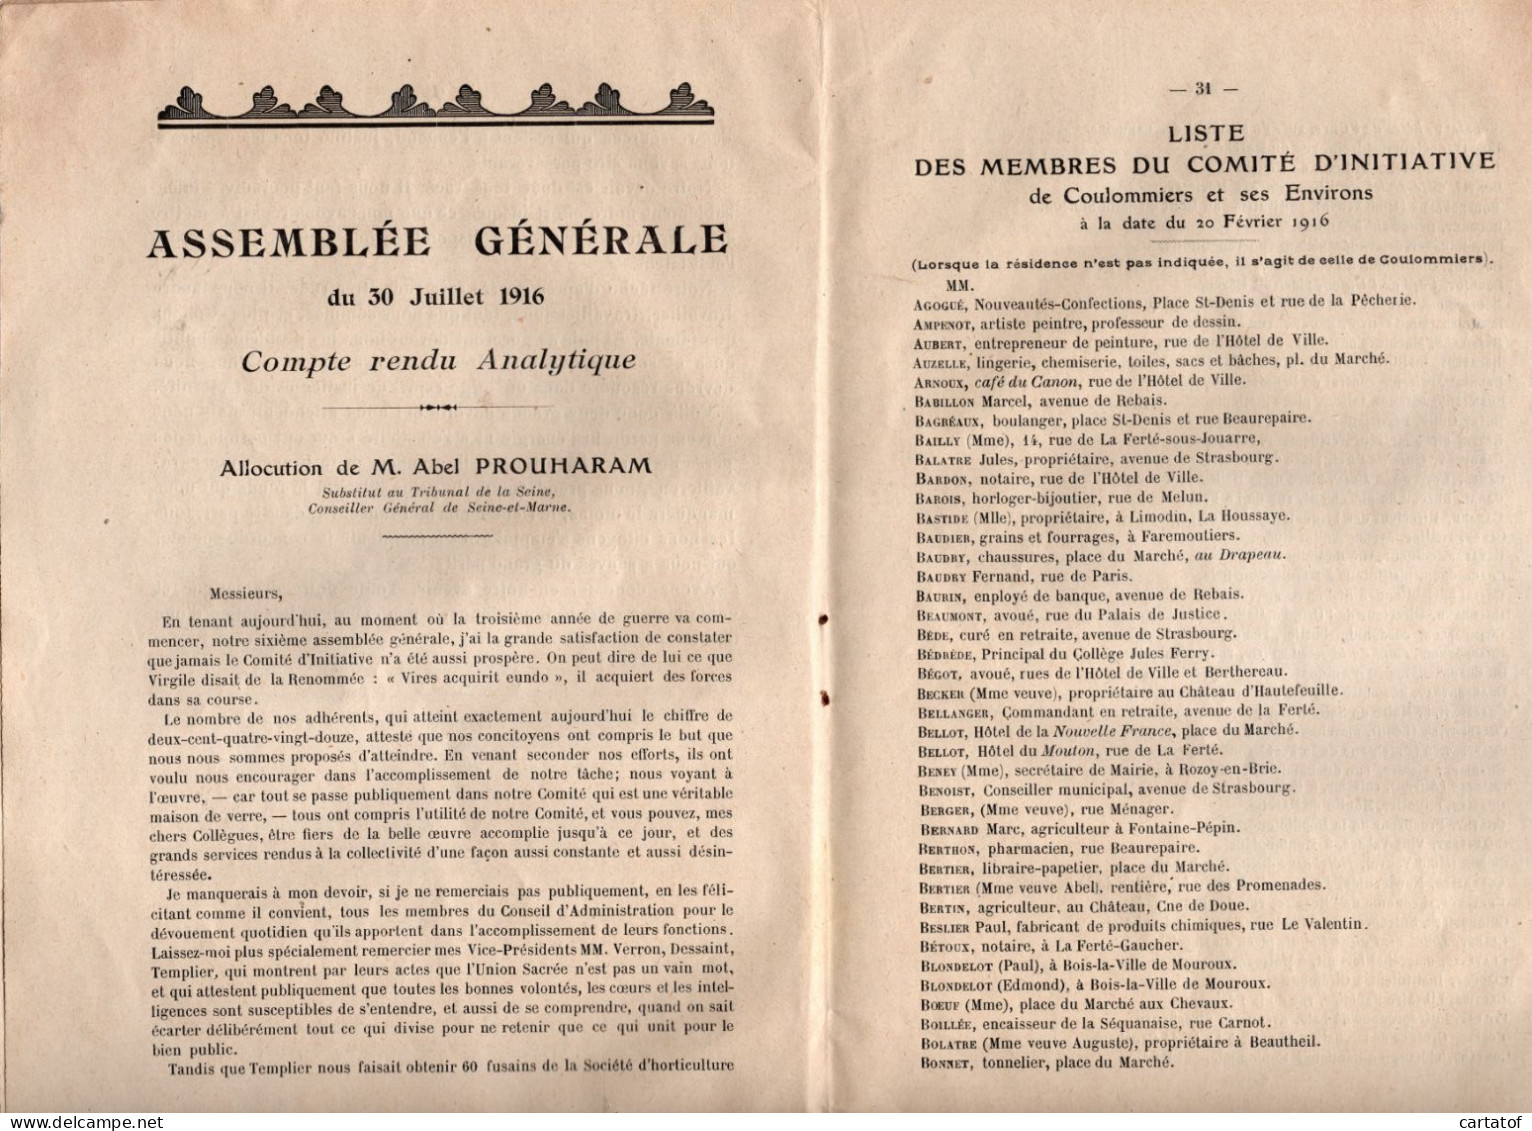 Comité D'Initiative De COULOMMIERS Et Ses Environs . Bulletin Trimestriel Octobre 1916 N°4 . - Unclassified